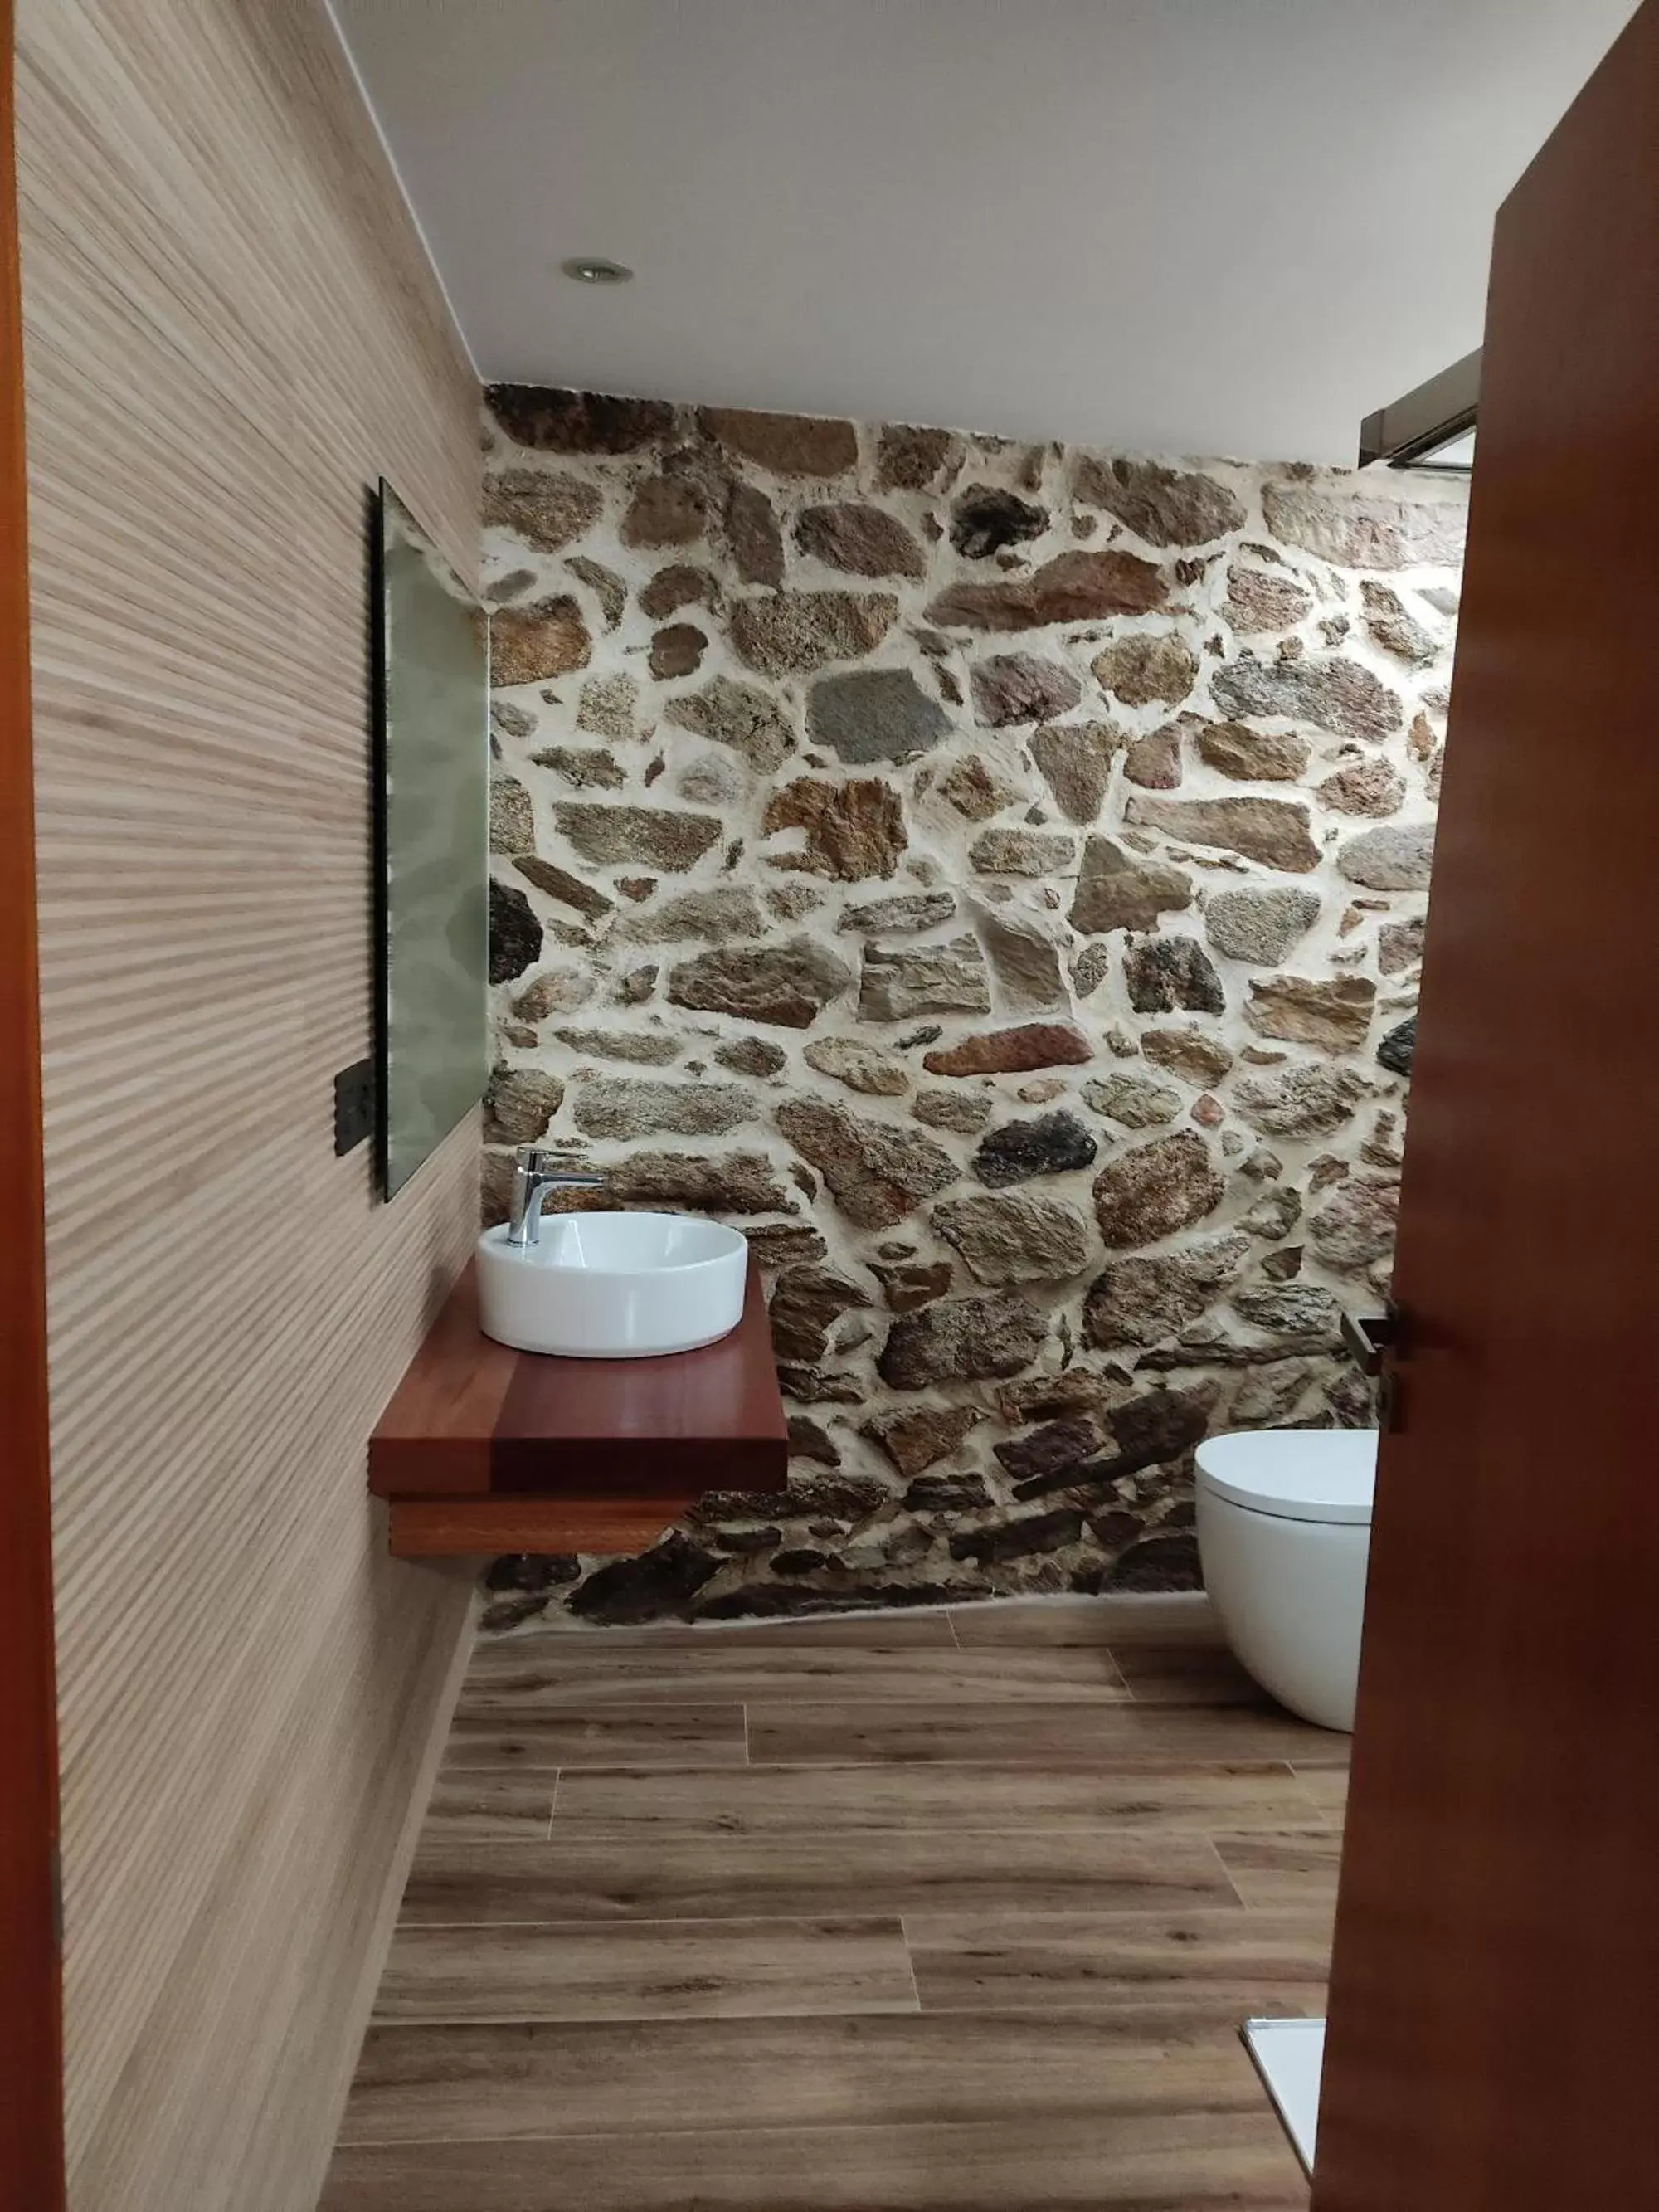 Bathroom in Hotel La Rectoral